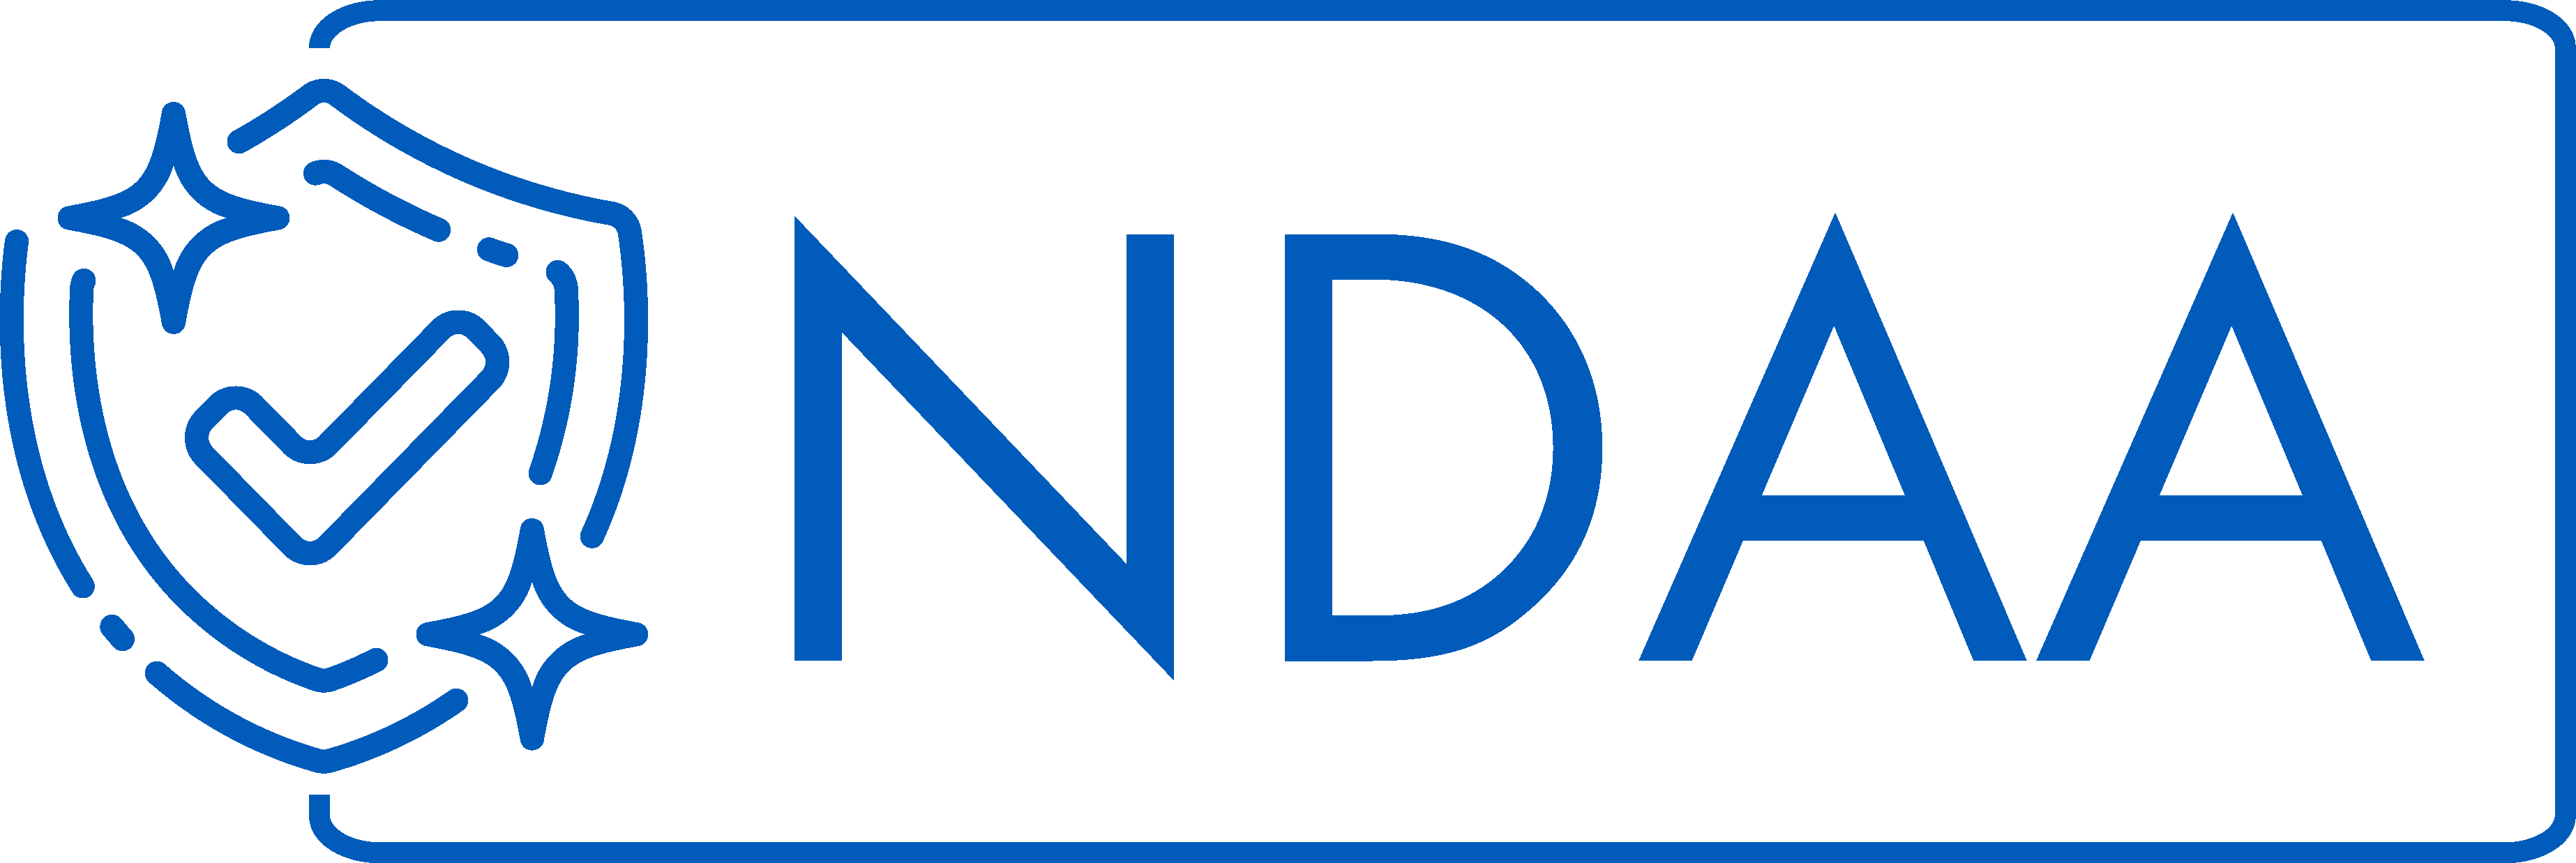 Logo NDAA IESS blue Iess